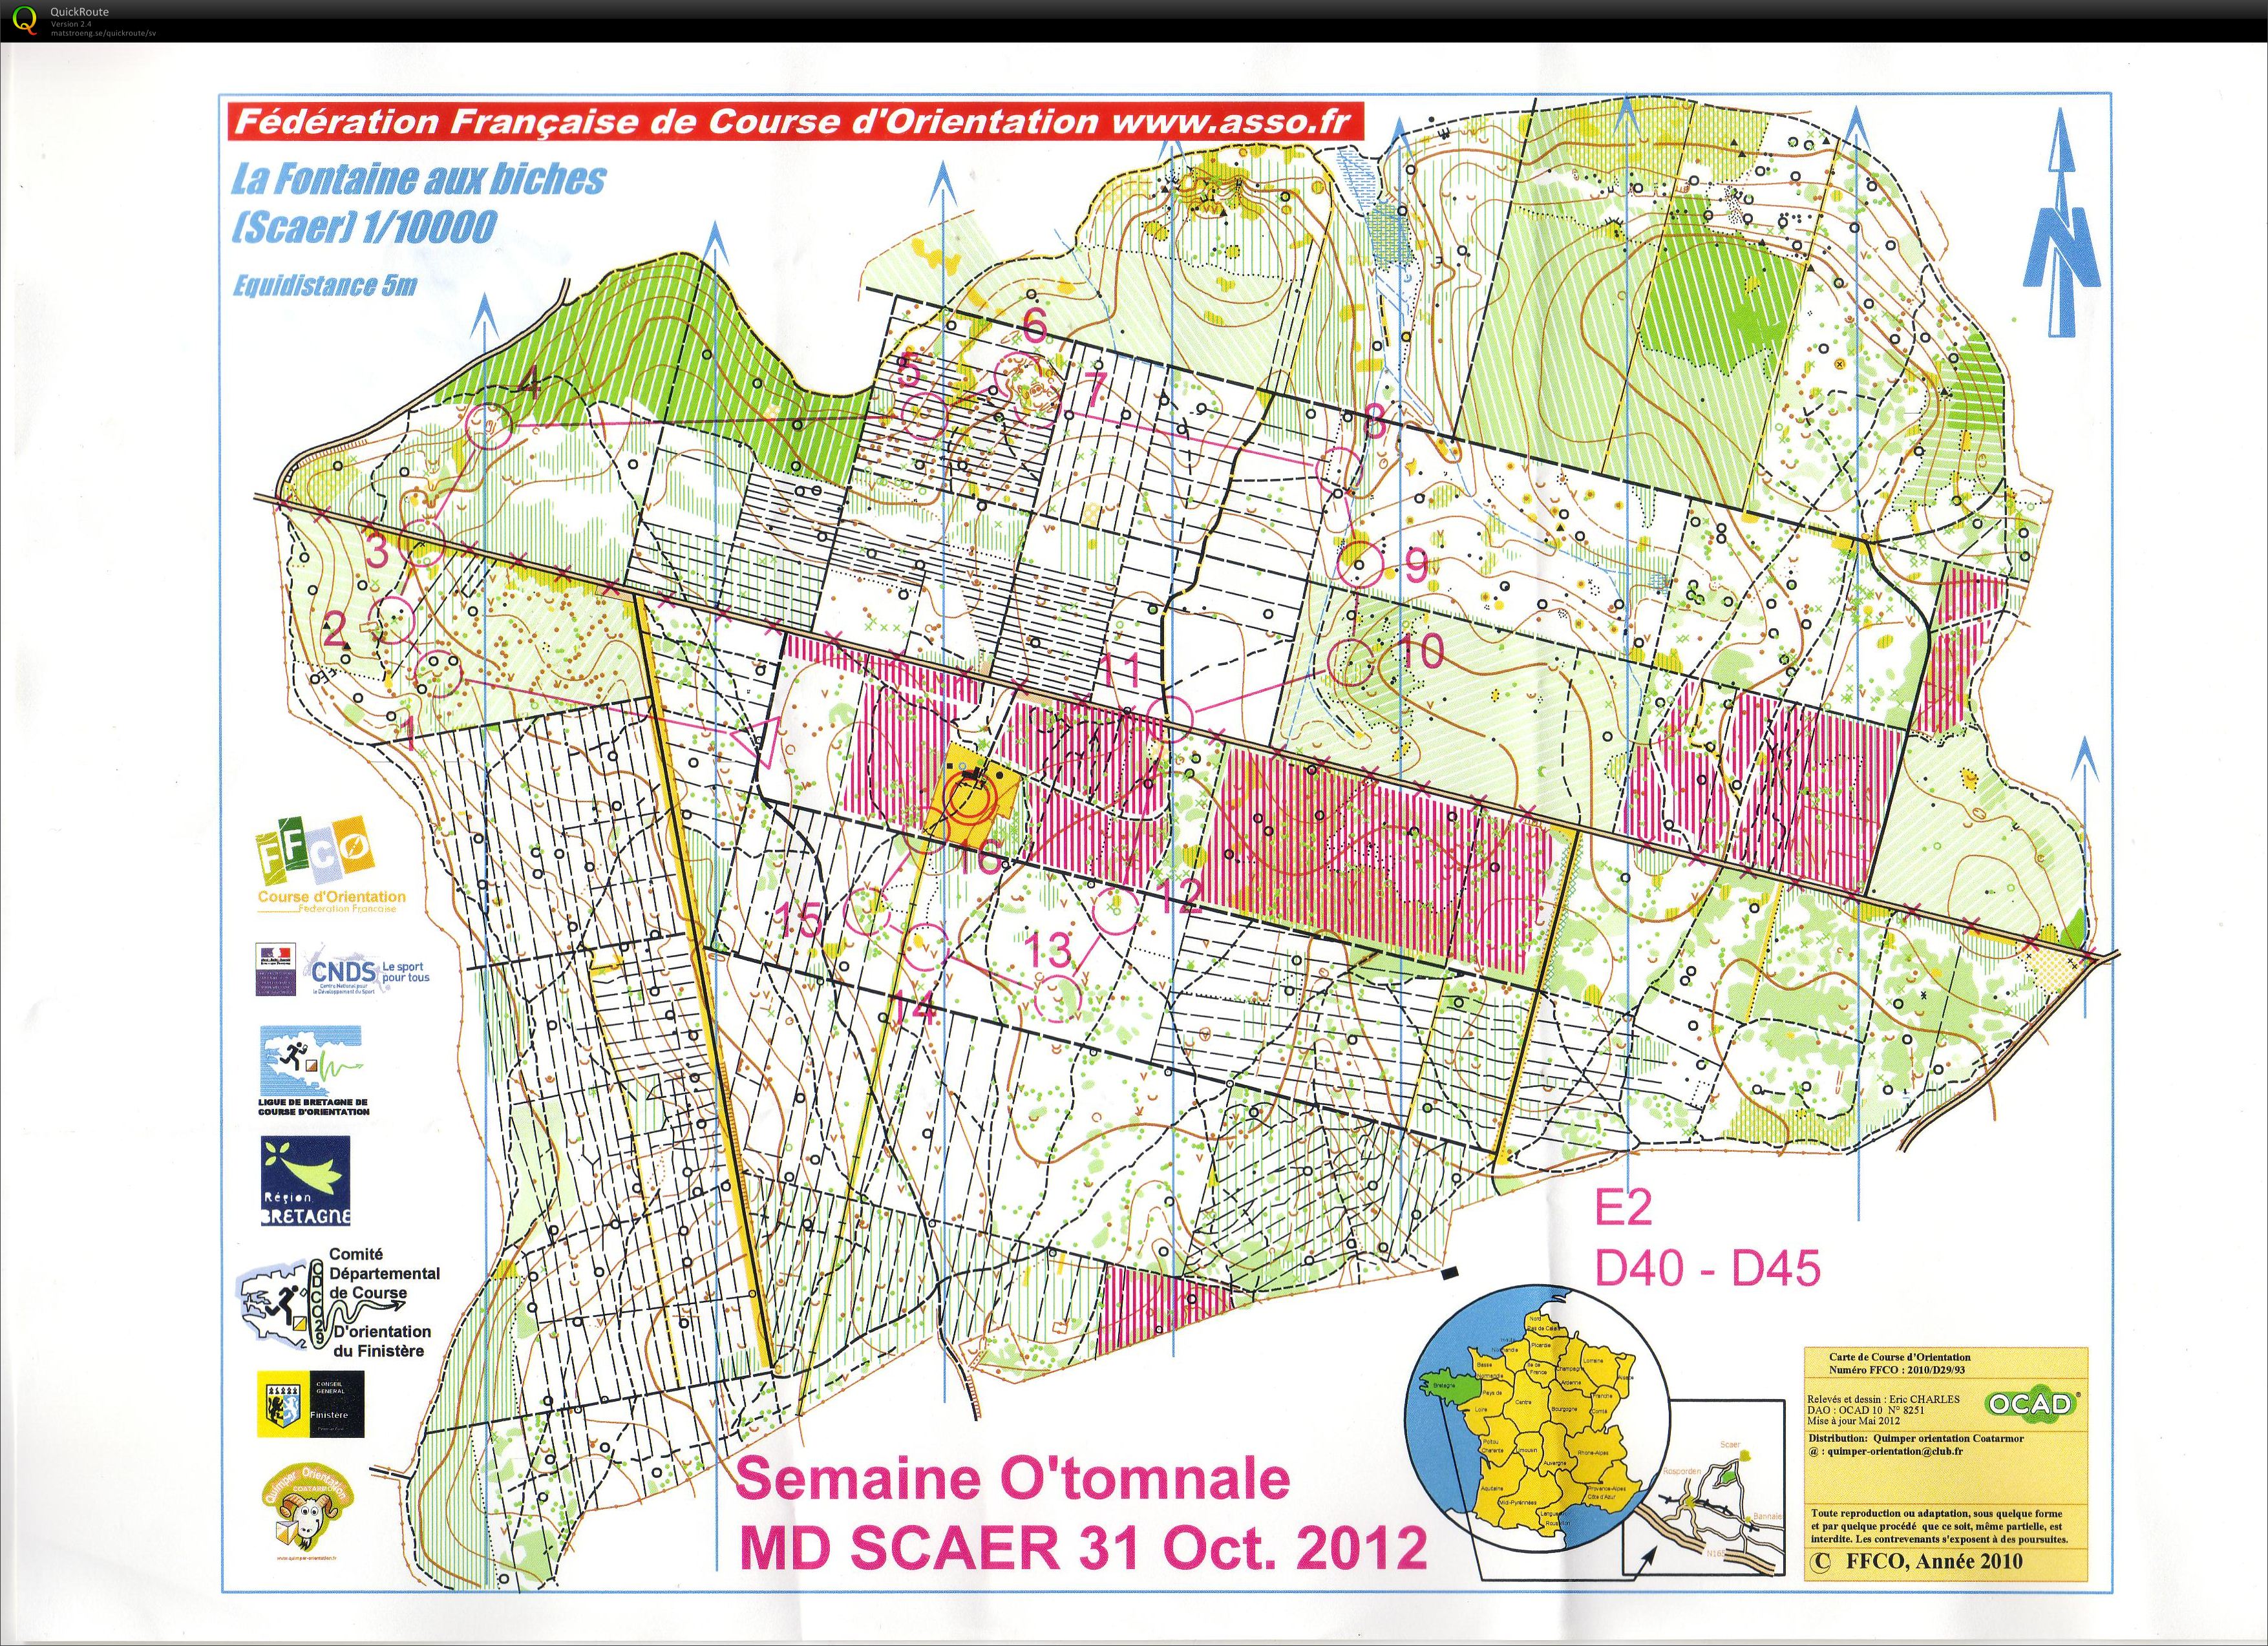 Semaine O'tomnale - E2 (31-10-2012)